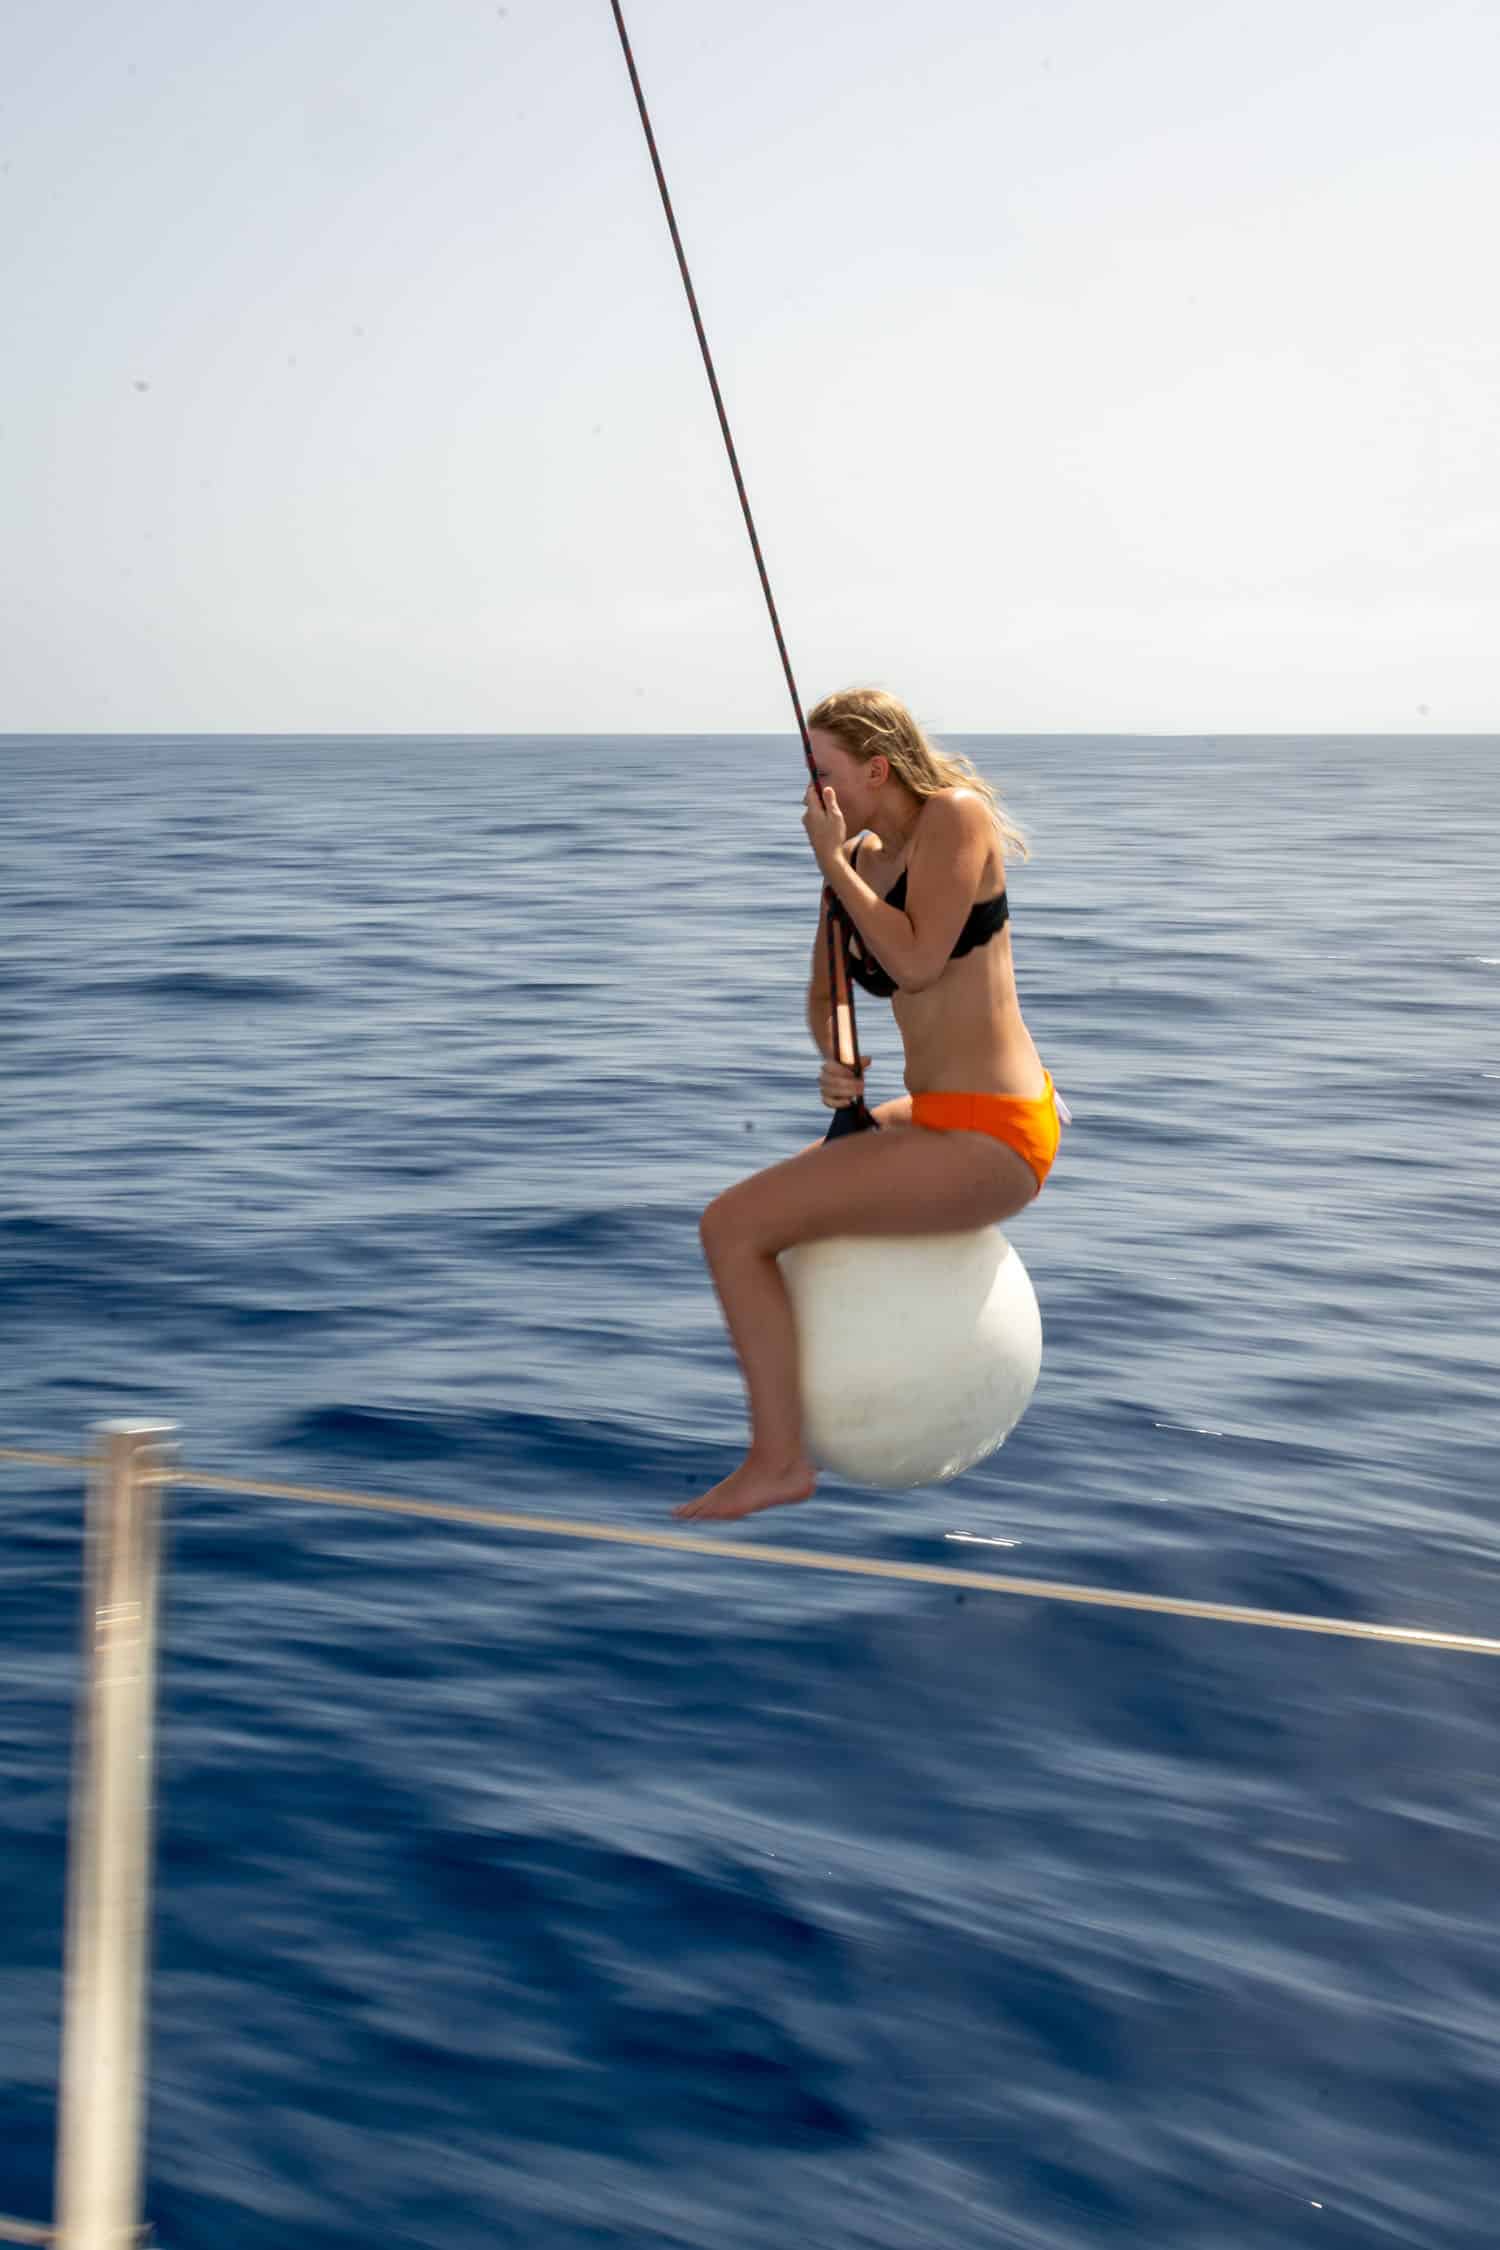 Eine junge Frau im orangefarbenen Bikini sitzt auf einer an einer Stange befestigten weißen Boje über dem tiefblauen Meer und konzentriert sich während ihres Segelurlaubs auf das Angeln.